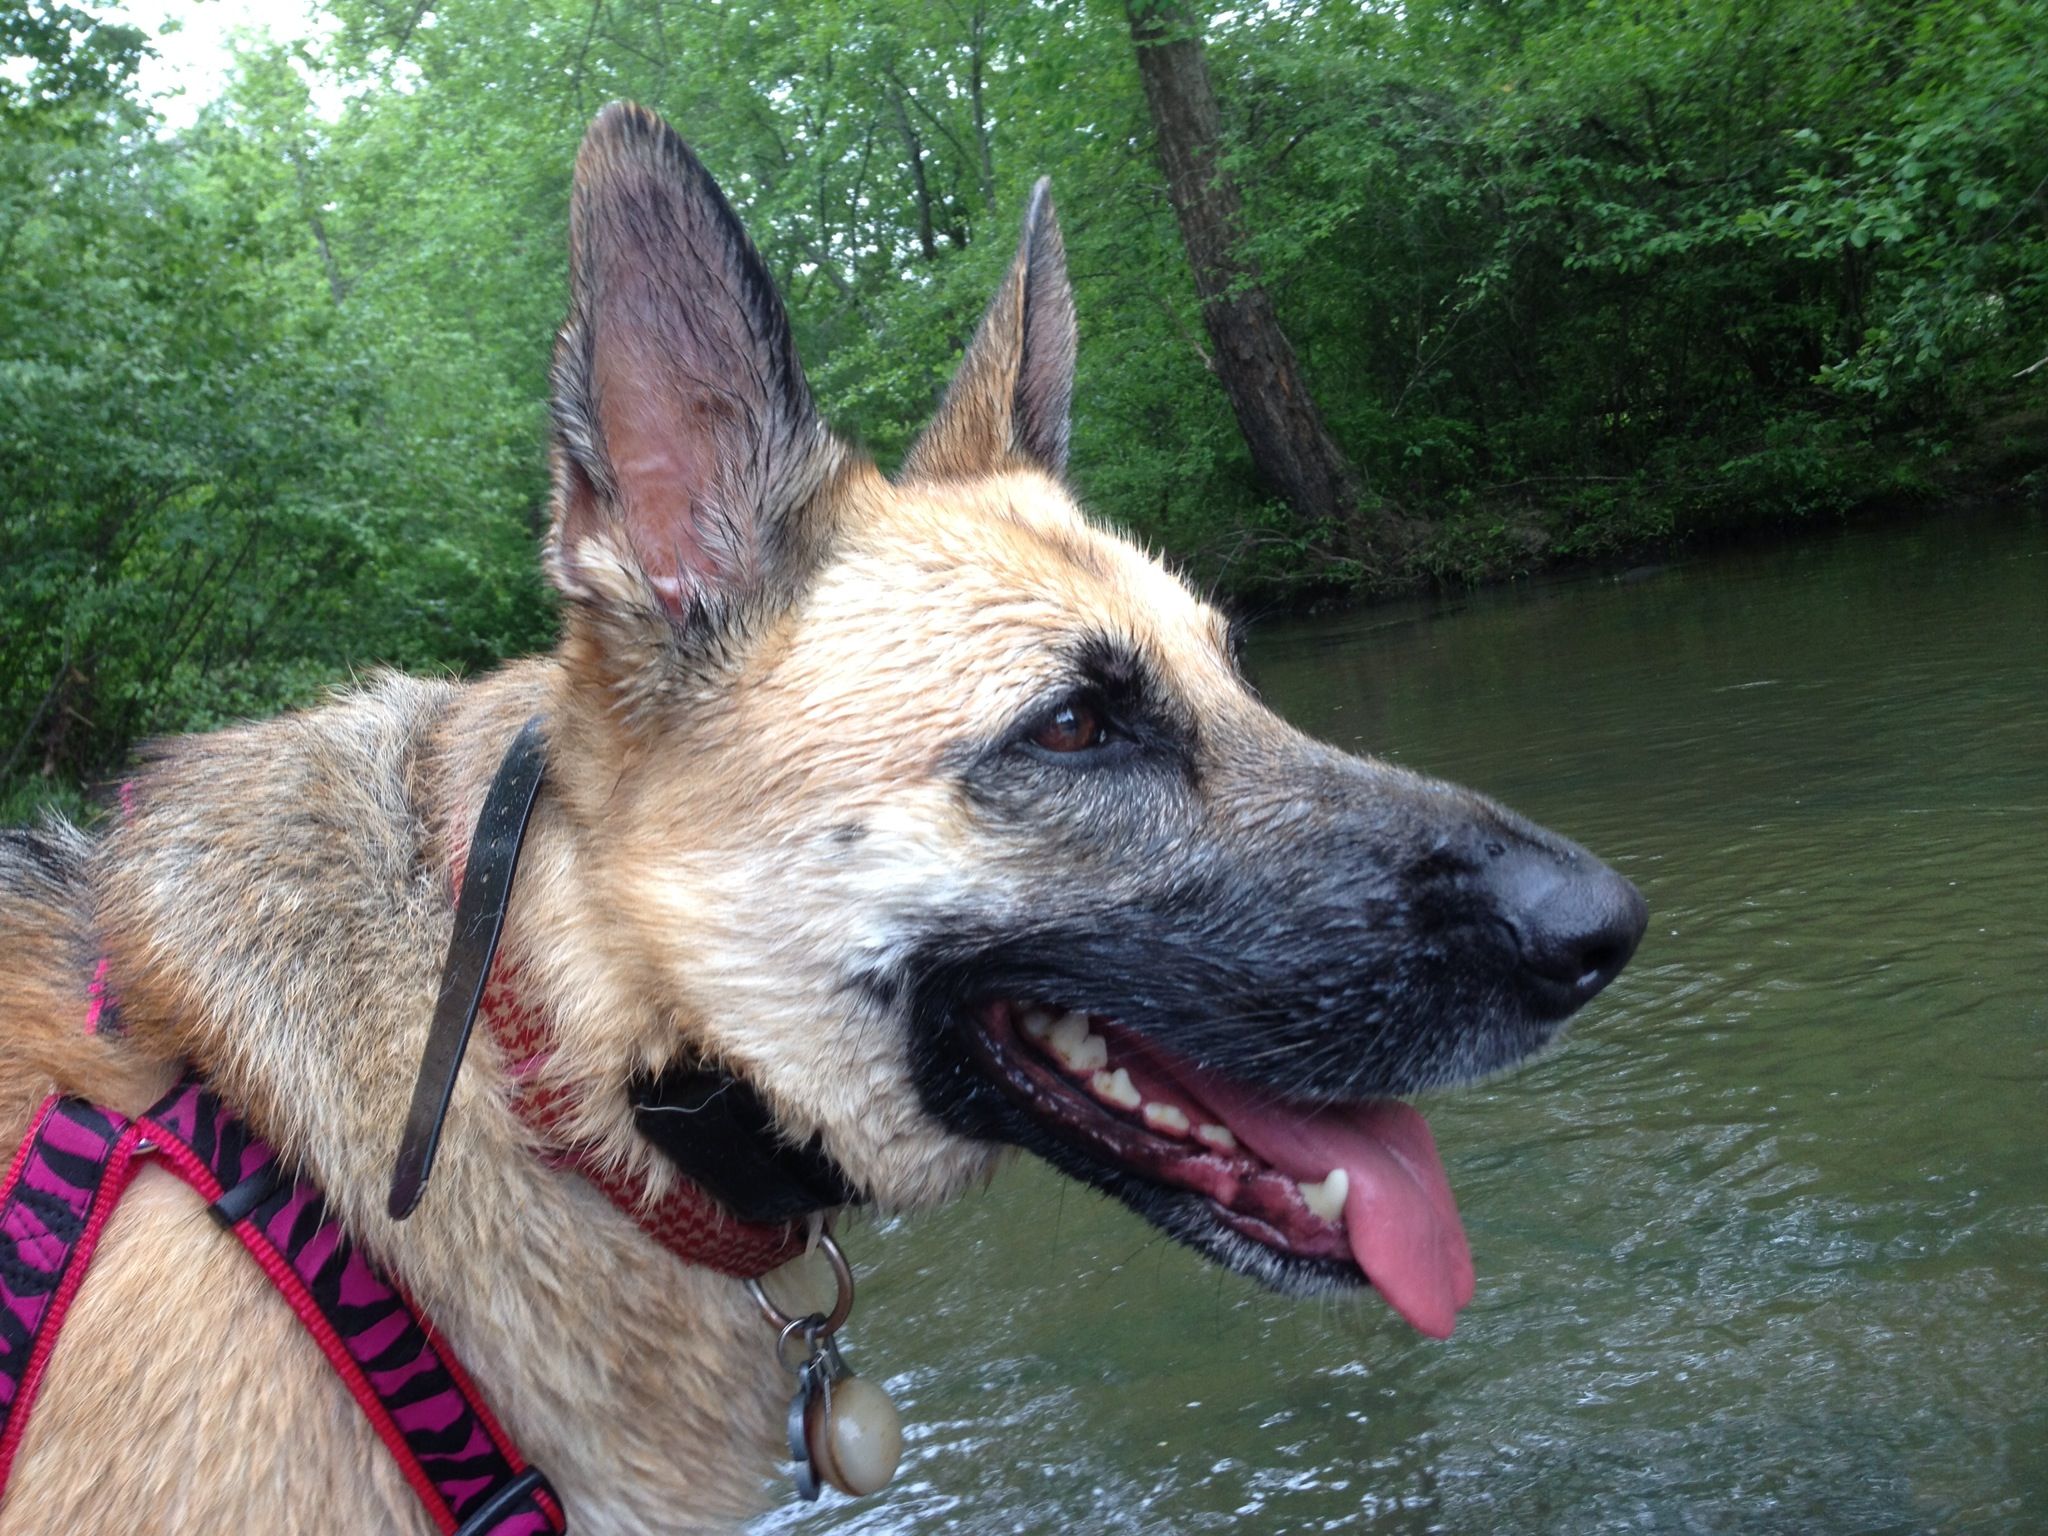 My German Shepherd loving the water